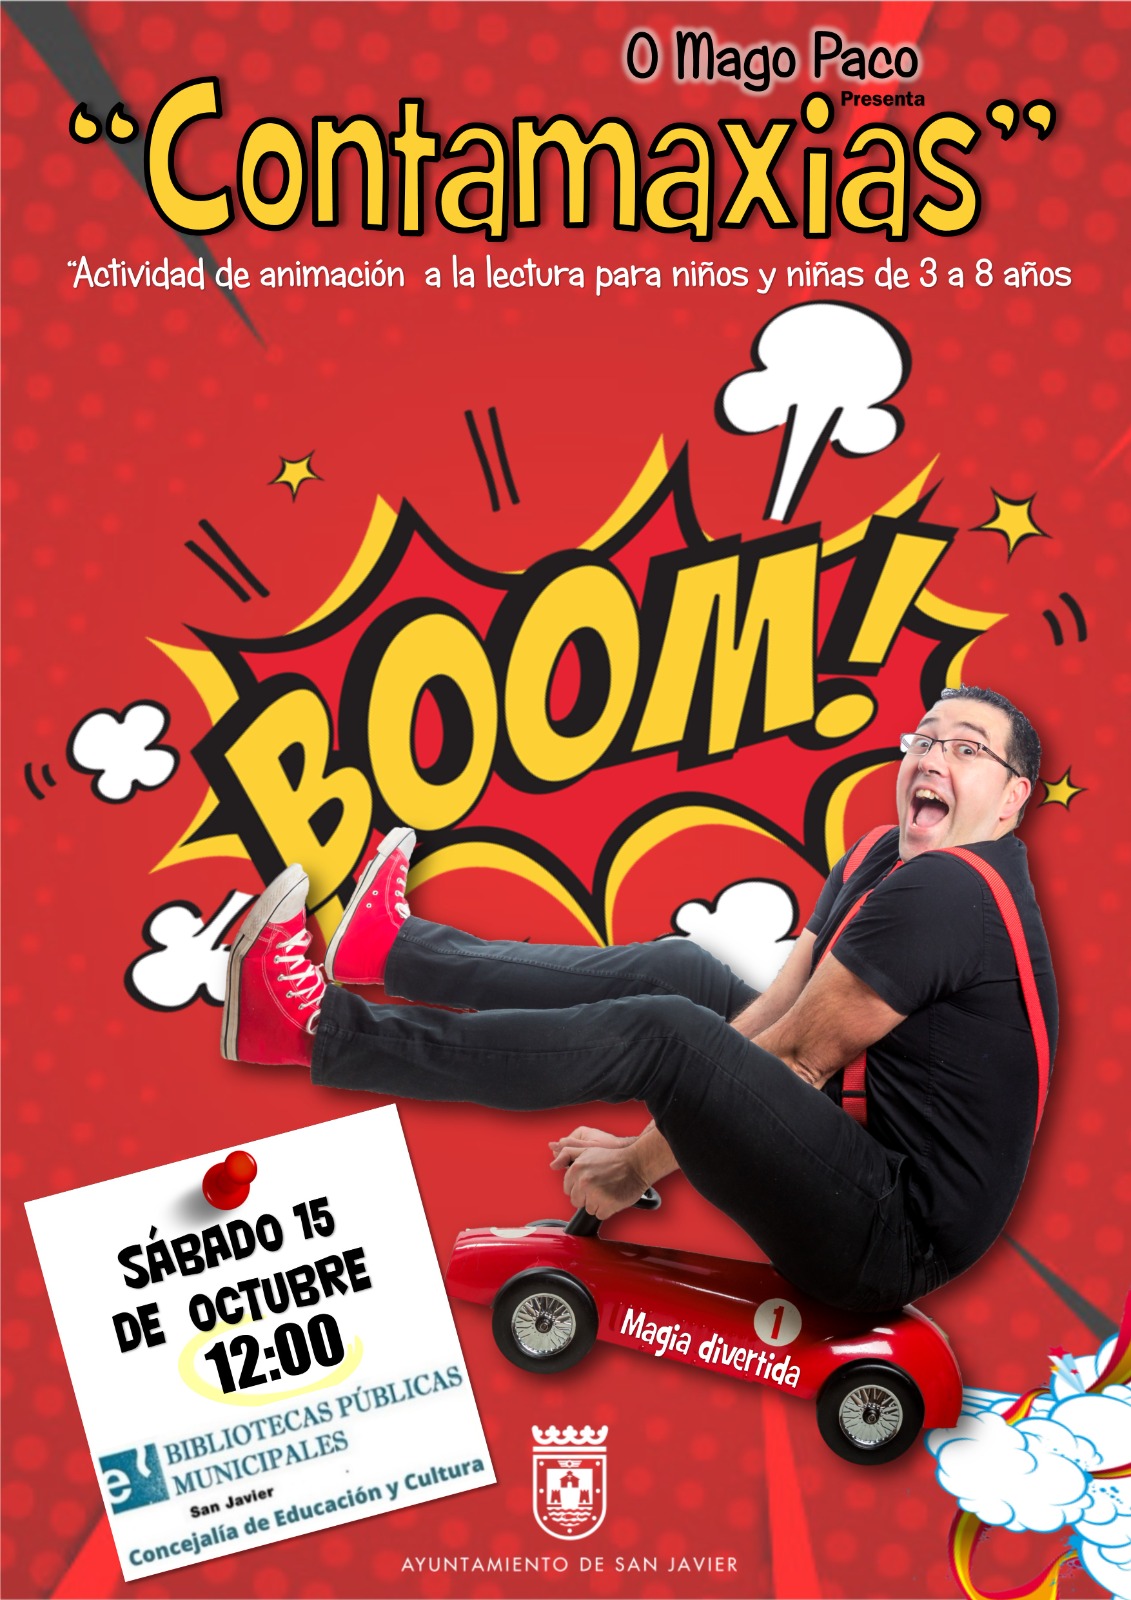 Sábado 15 de octubre a las 12:00 horas en la Biblioteca de San Javier. Contamaxia, espectáculo de magia y animación a la lectura recomendado para familias con niños de 3 a 8 años.